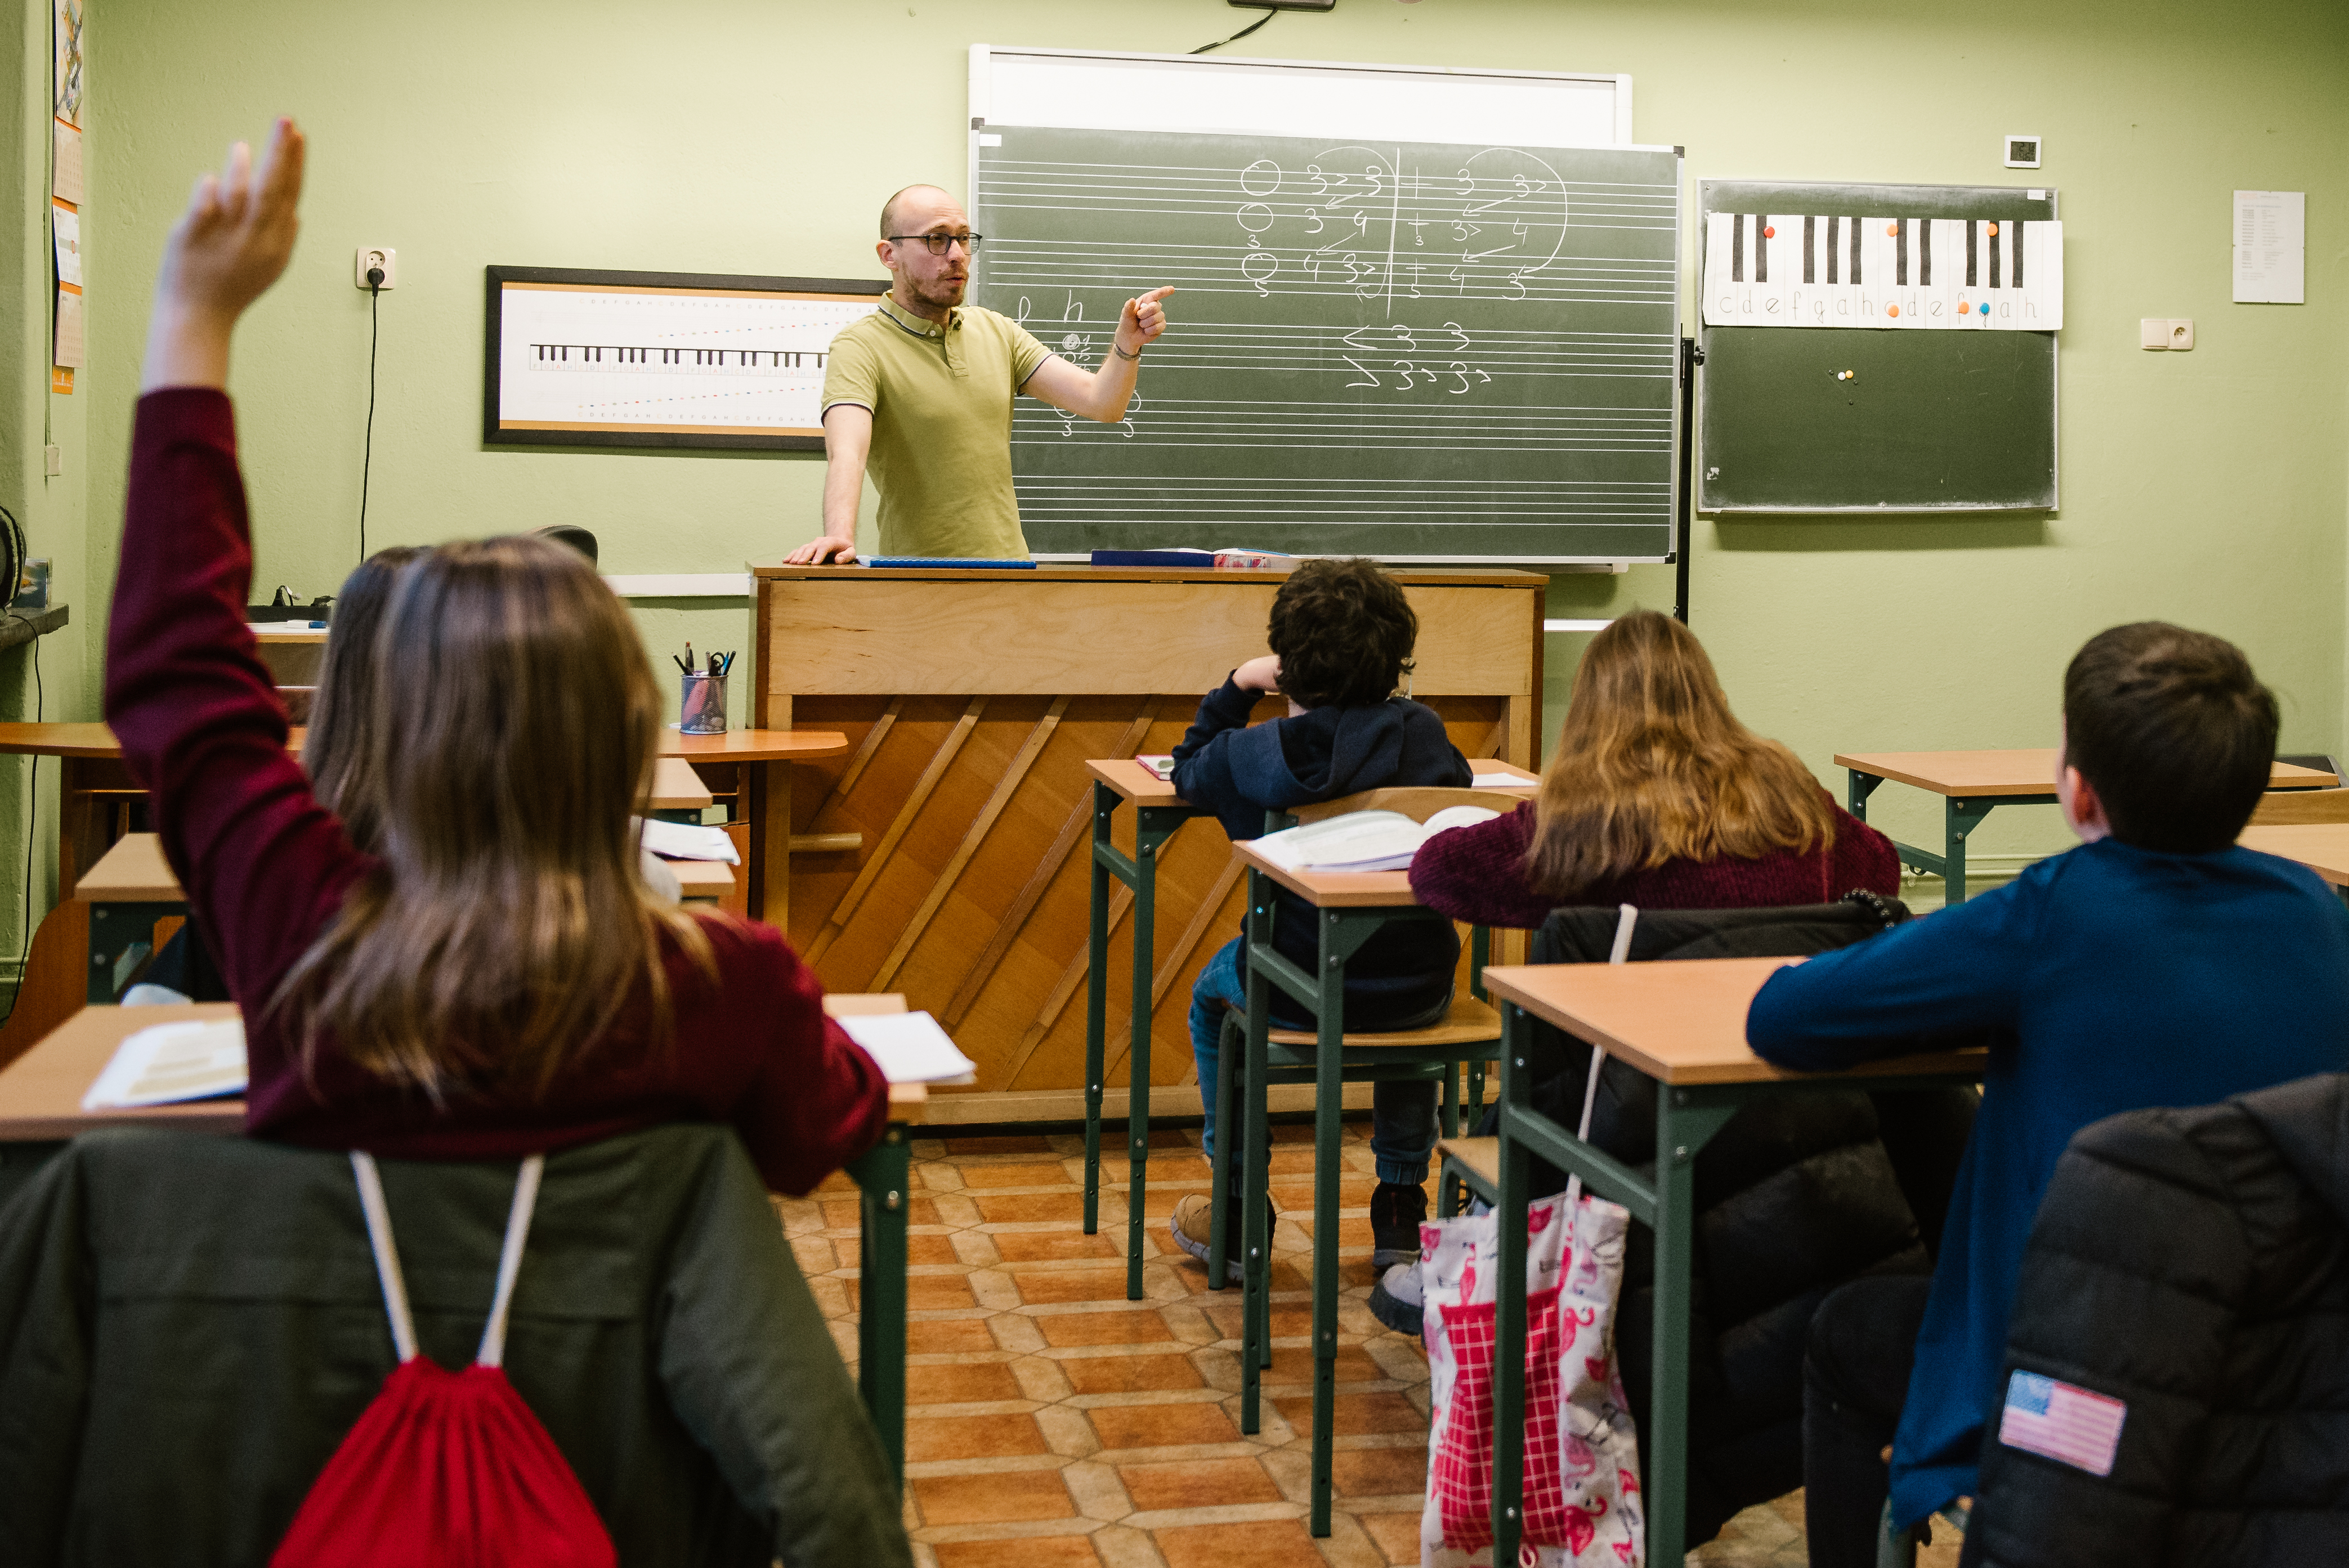 Na zdjęcie znajduje się nauczyciel Dariusz Latosi oraz grupa uczniów. Nauczyciel stoi oparty przy pianinie z uniesioną lewą ręką, uczniowie siedzą w ławkach , na których znajdują się książki i zeszyty. Na ścianie w tle wiszą tablice oraz meloplast. 